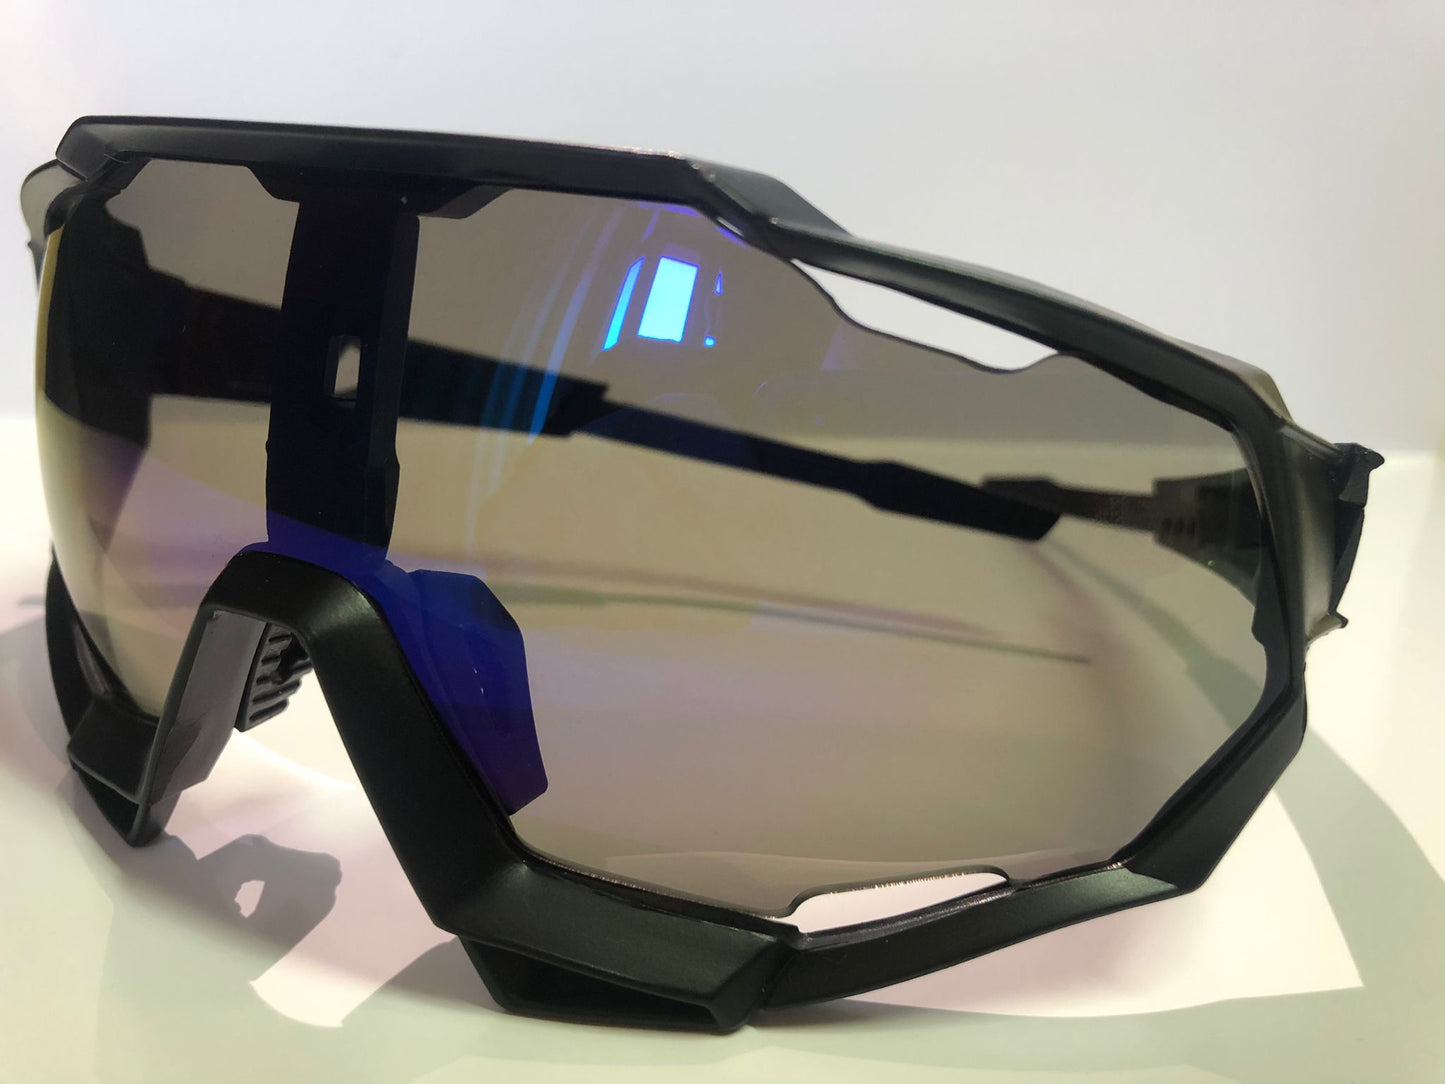 SPOX Fuoriora glasses - Limited Edition 2022